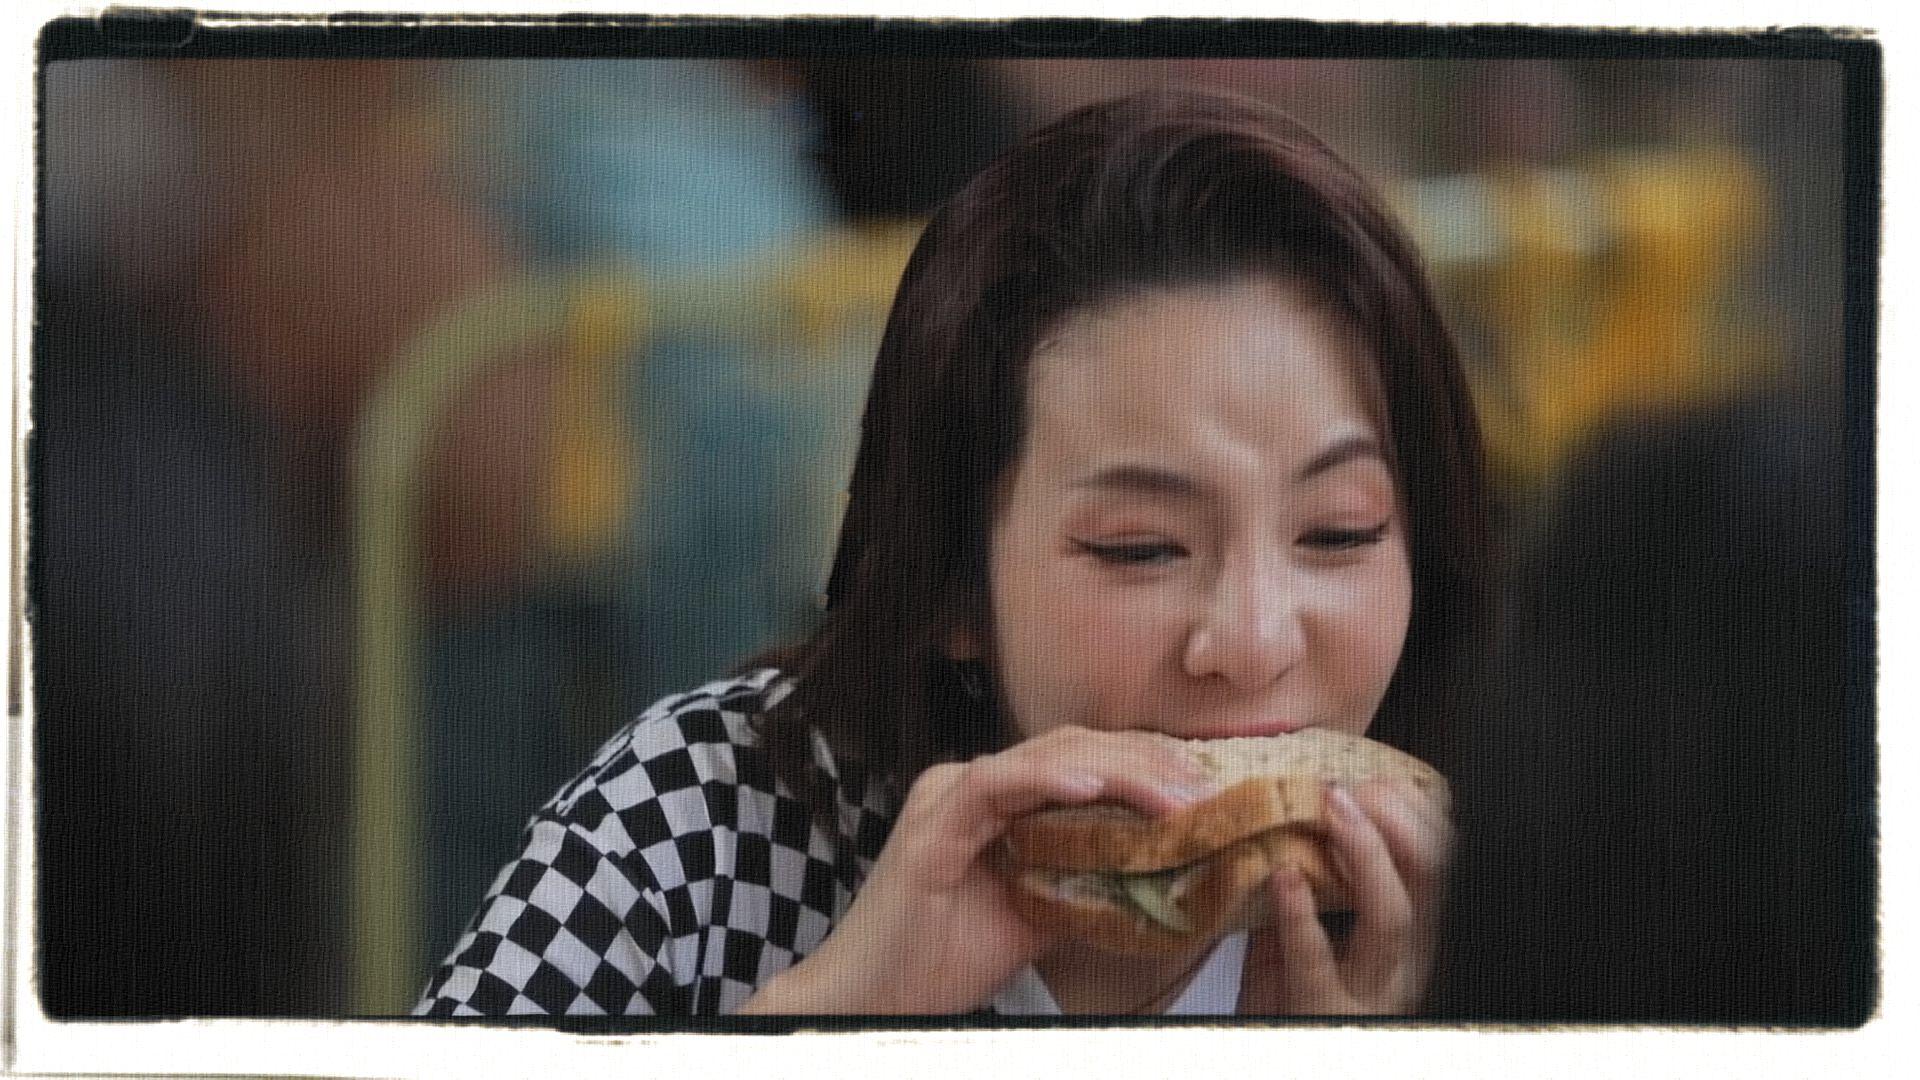 sandara park 박산다라 new song 2NE1 eating sandwich